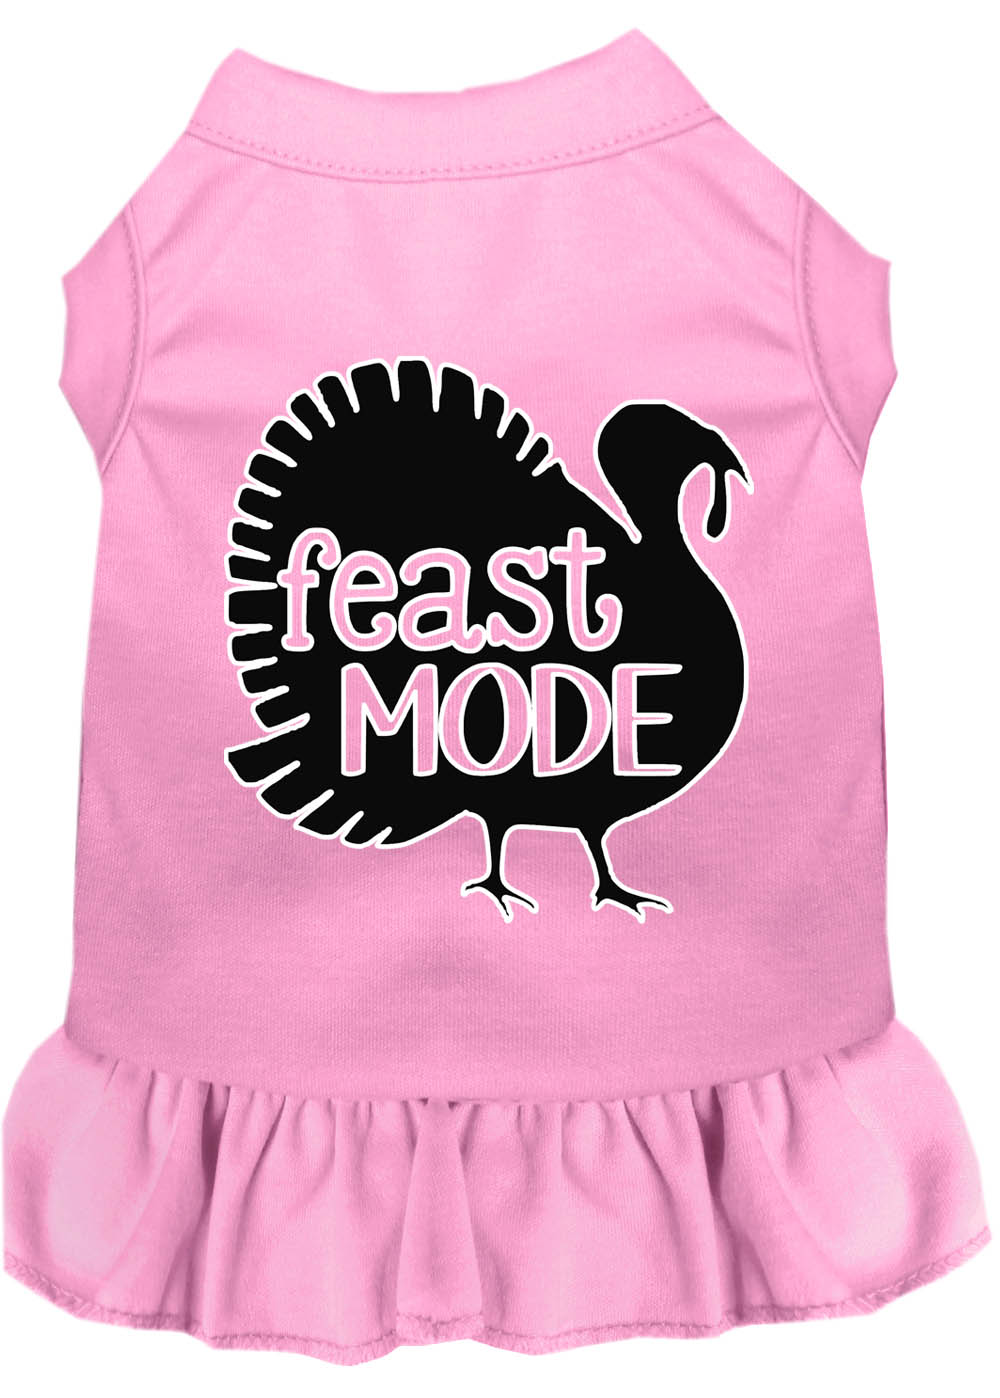 Feast Mode Screen Print Dog Dress Light Pink XL